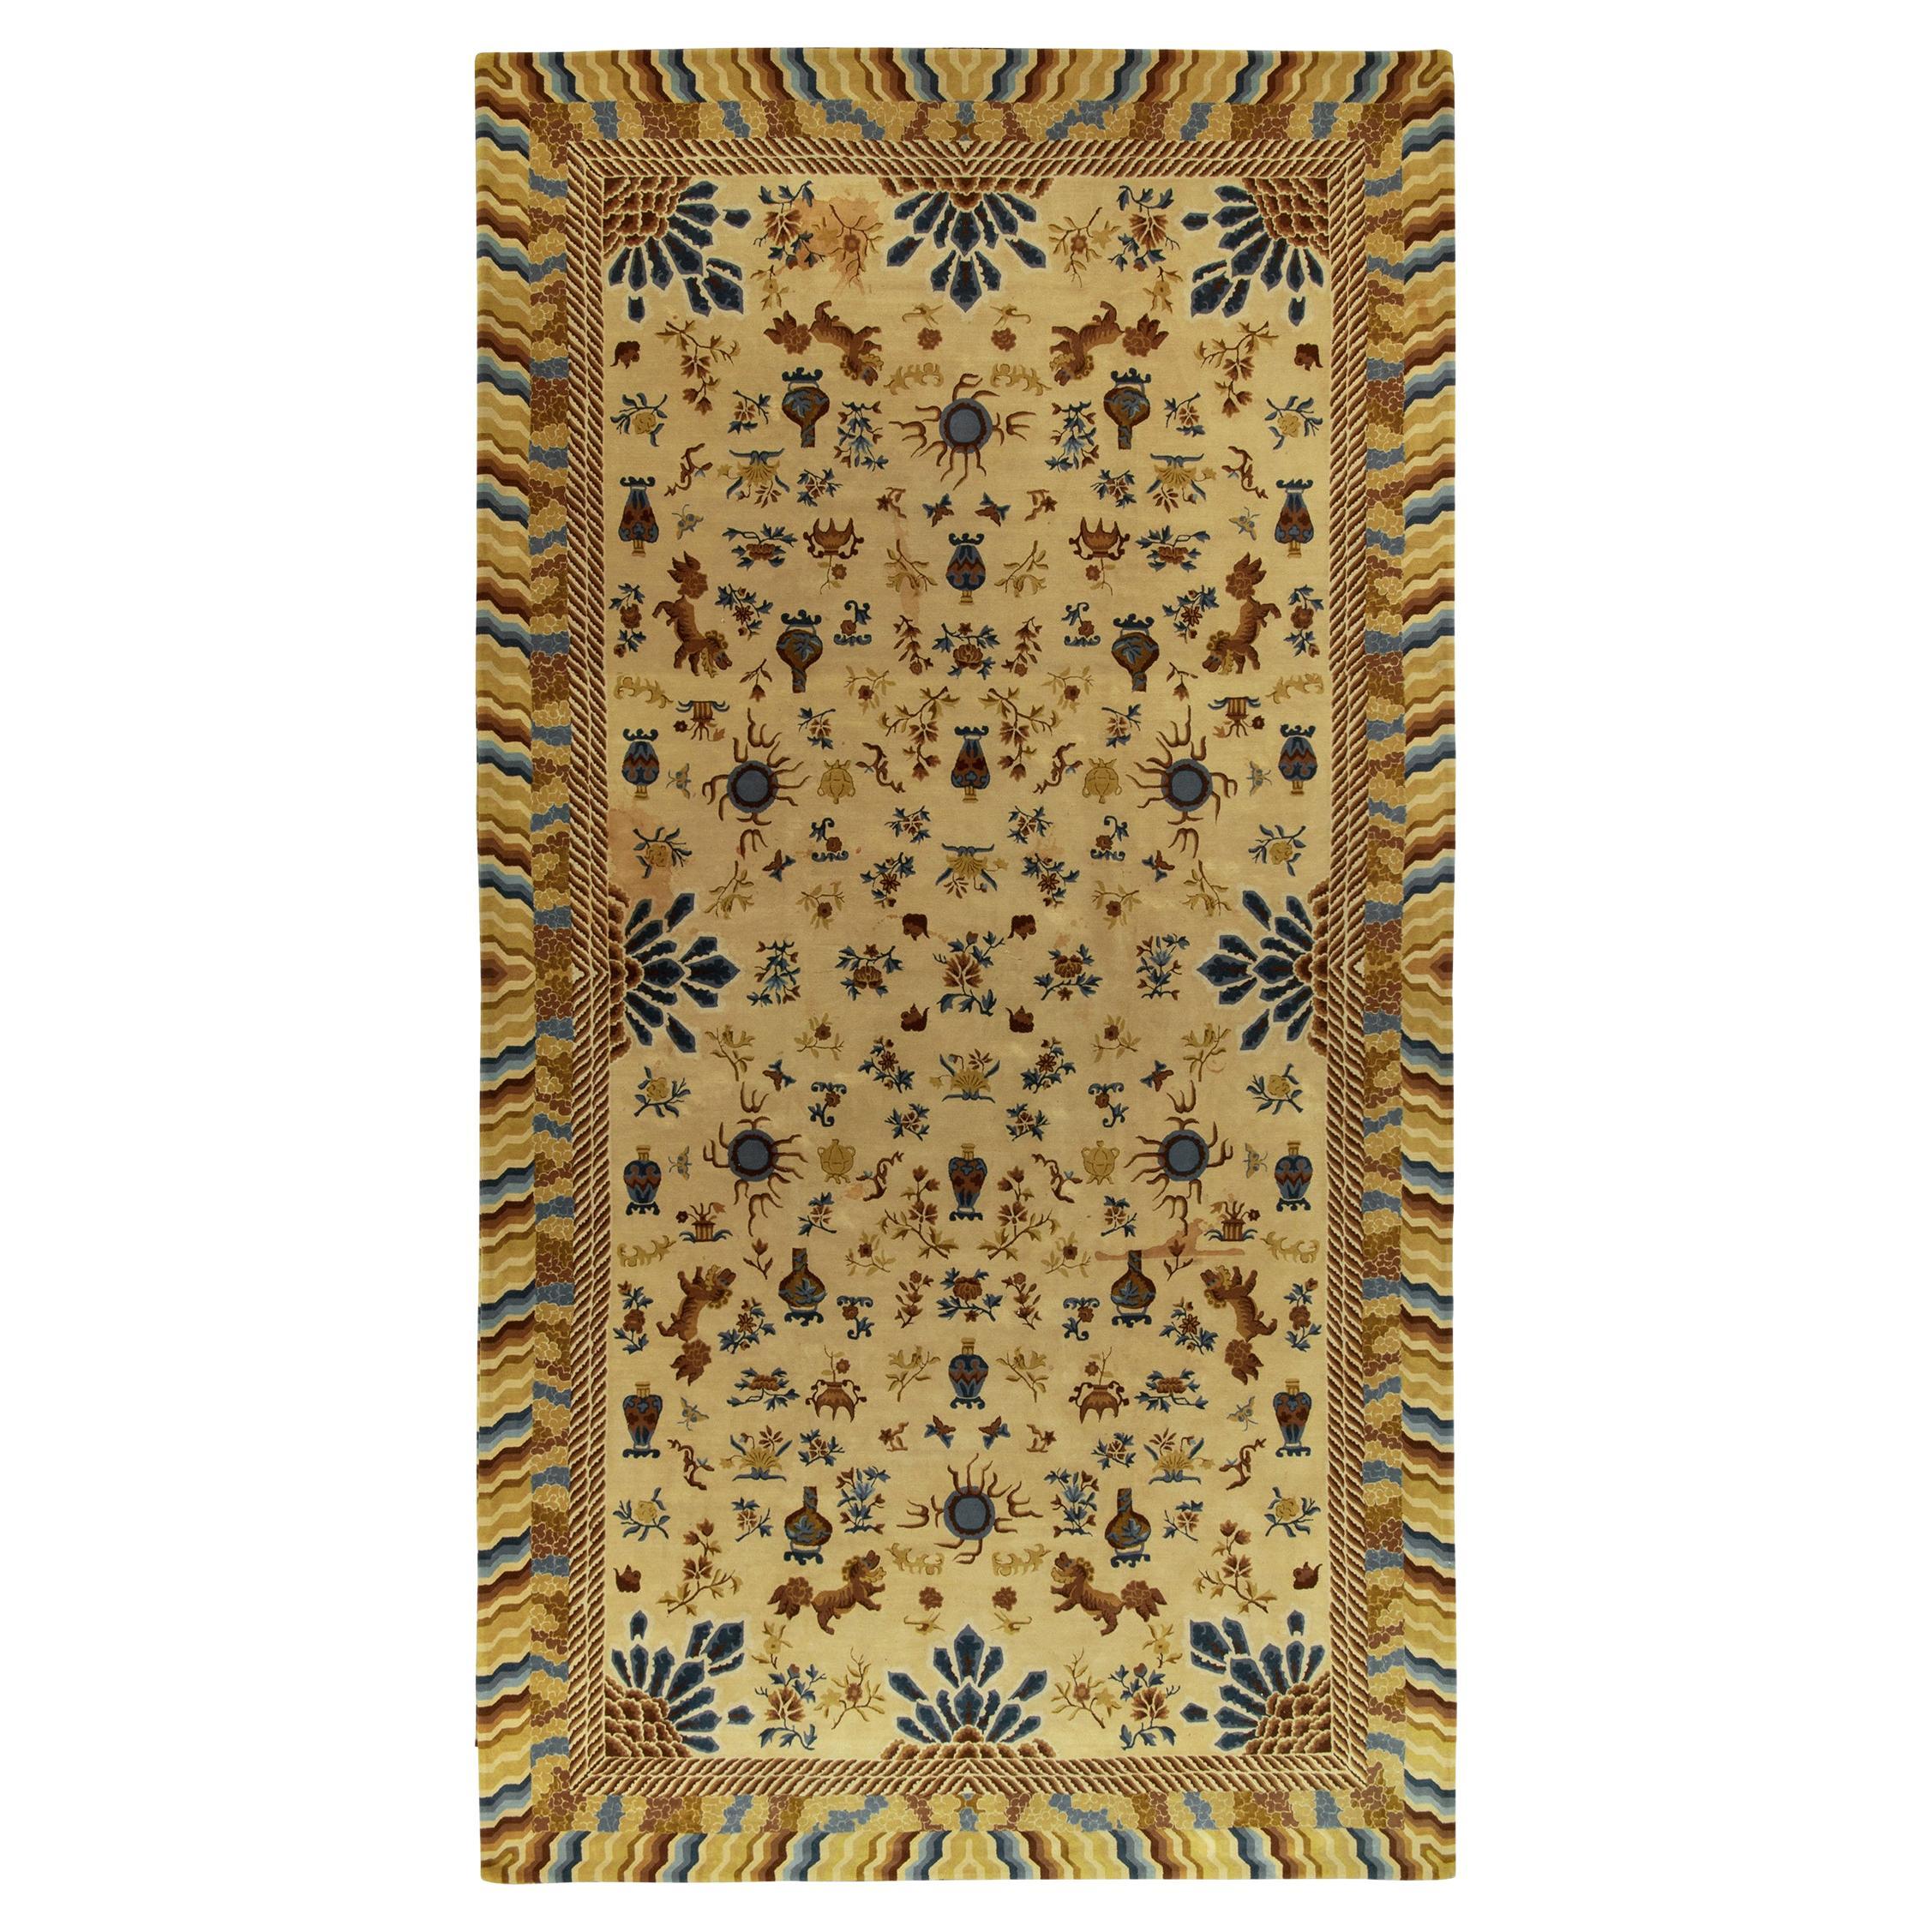 Antiker antiker Kapuzenteppich in Gold, Blau & Beige im chinesischen Bildstil von Teppich & Kelim